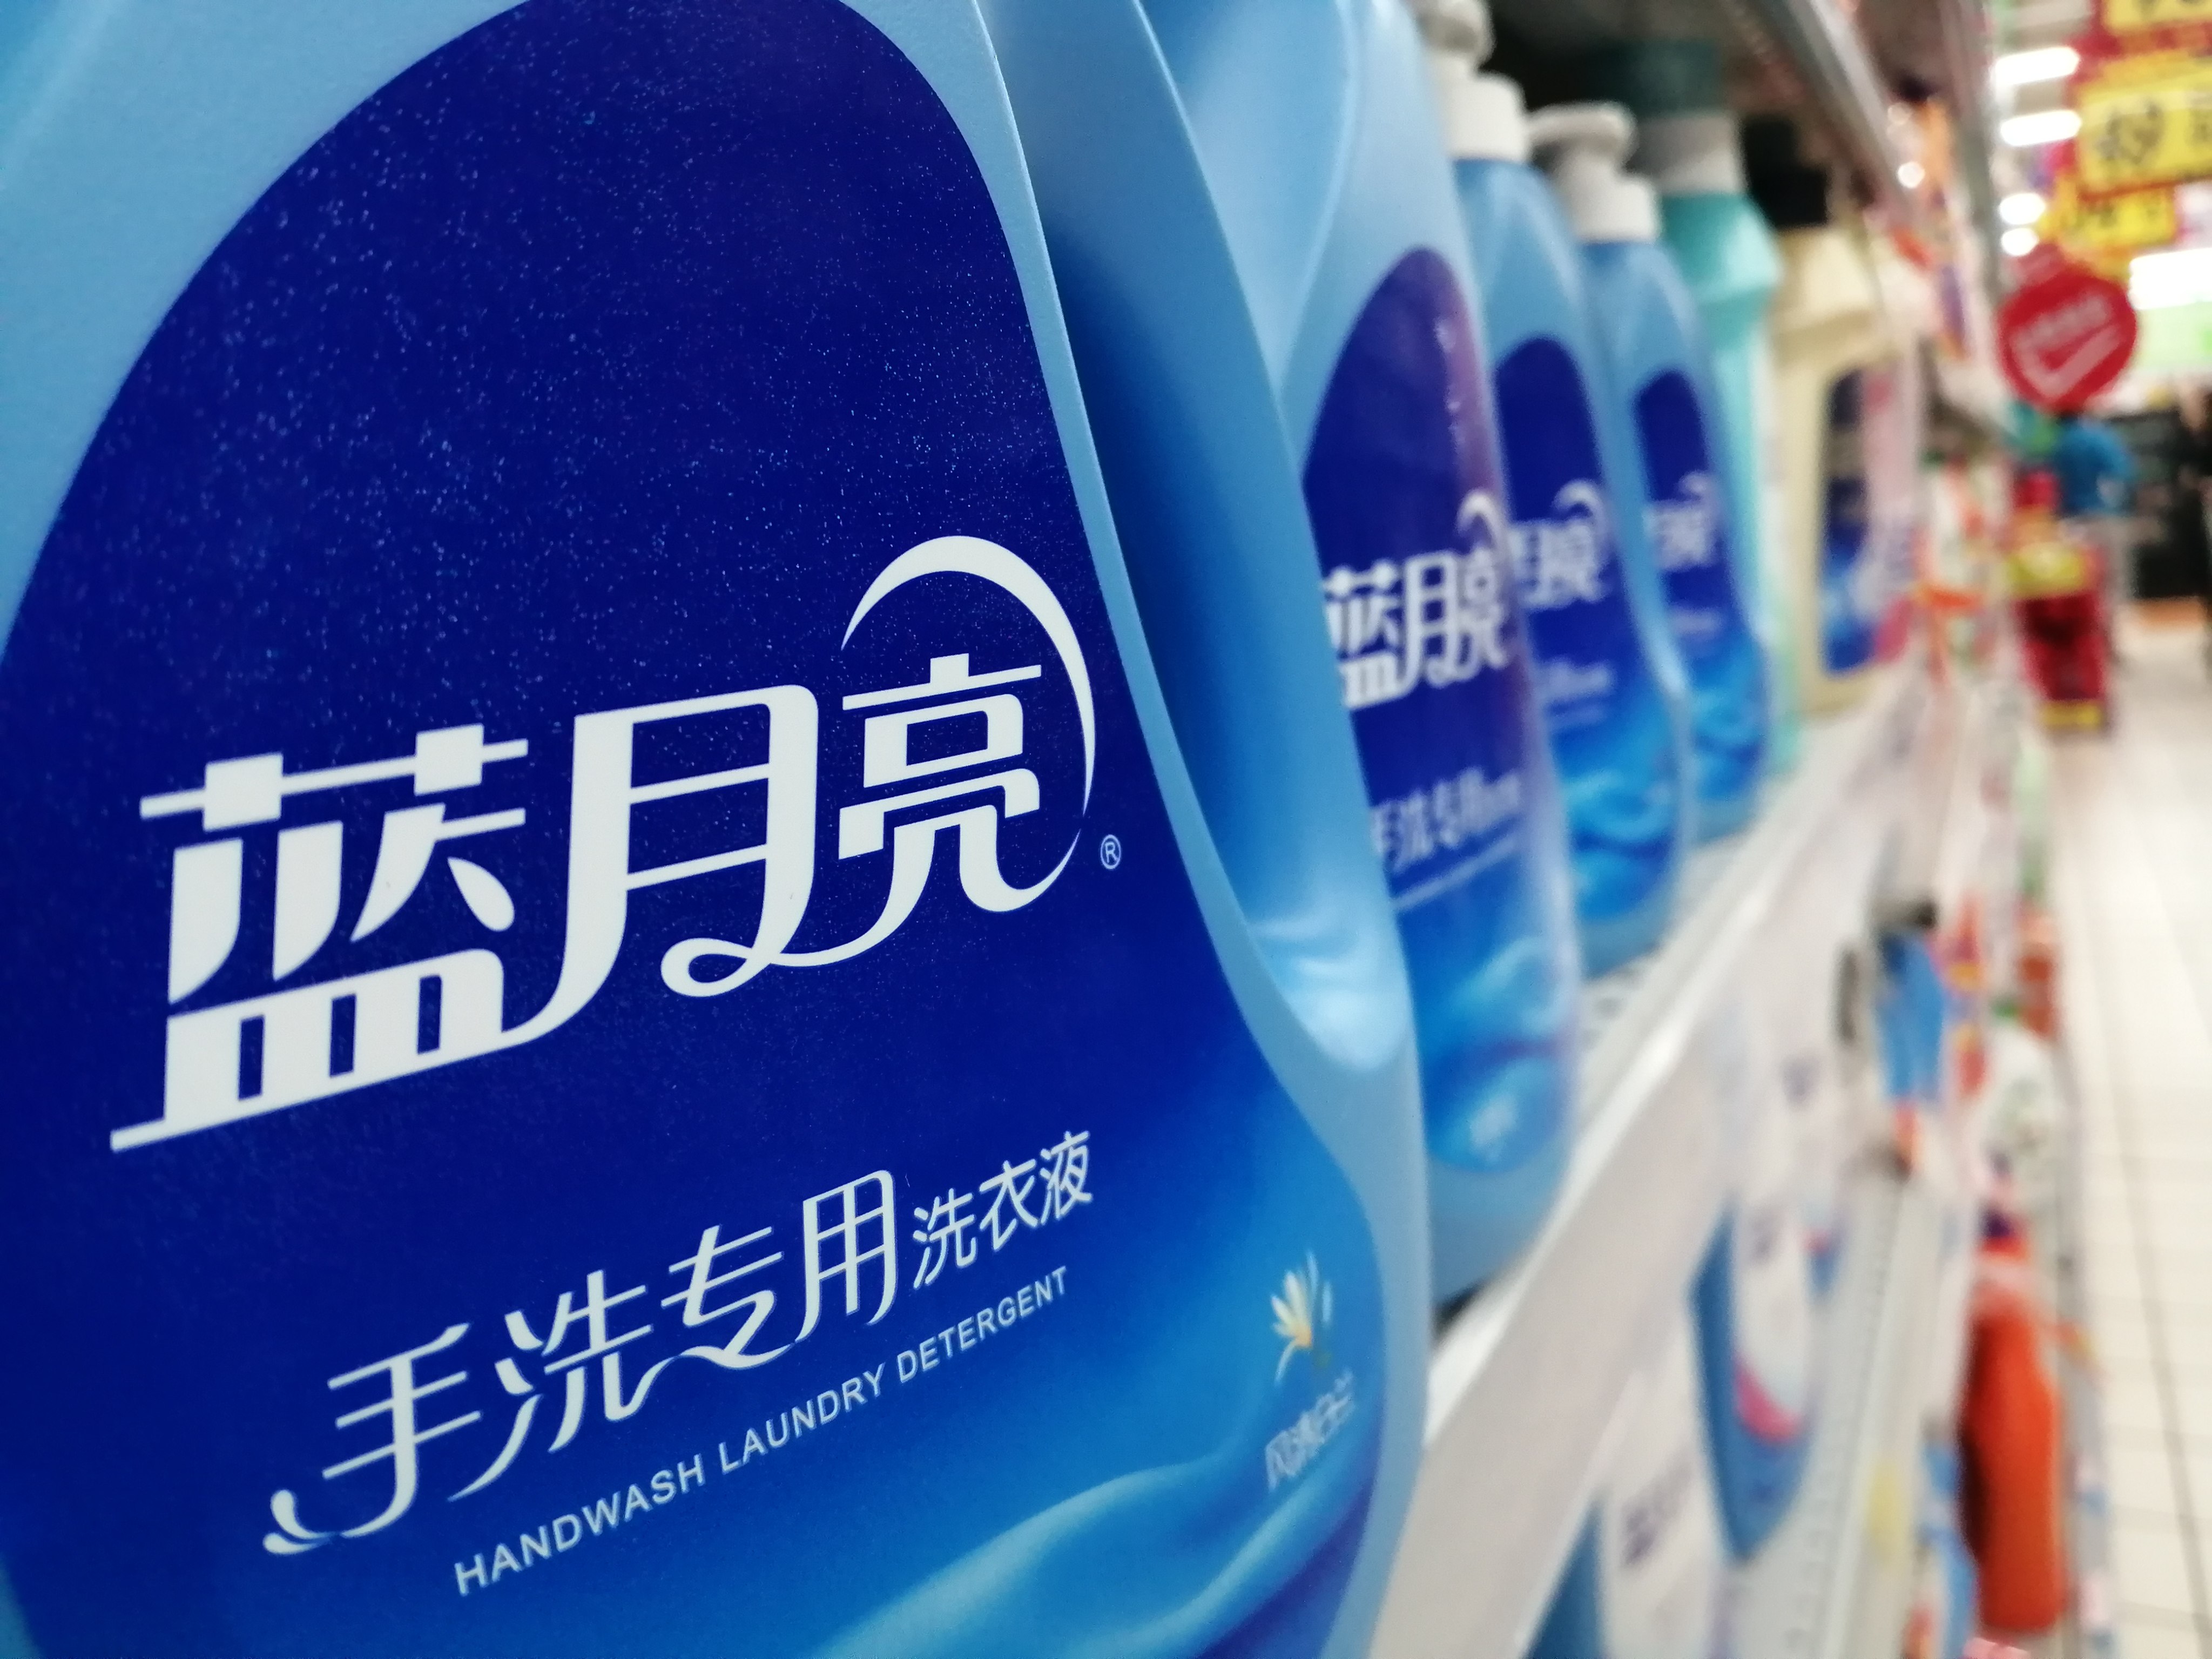 Bottles of Blue Moon hand wash laundry detergent.   Photo: Imaginechina 